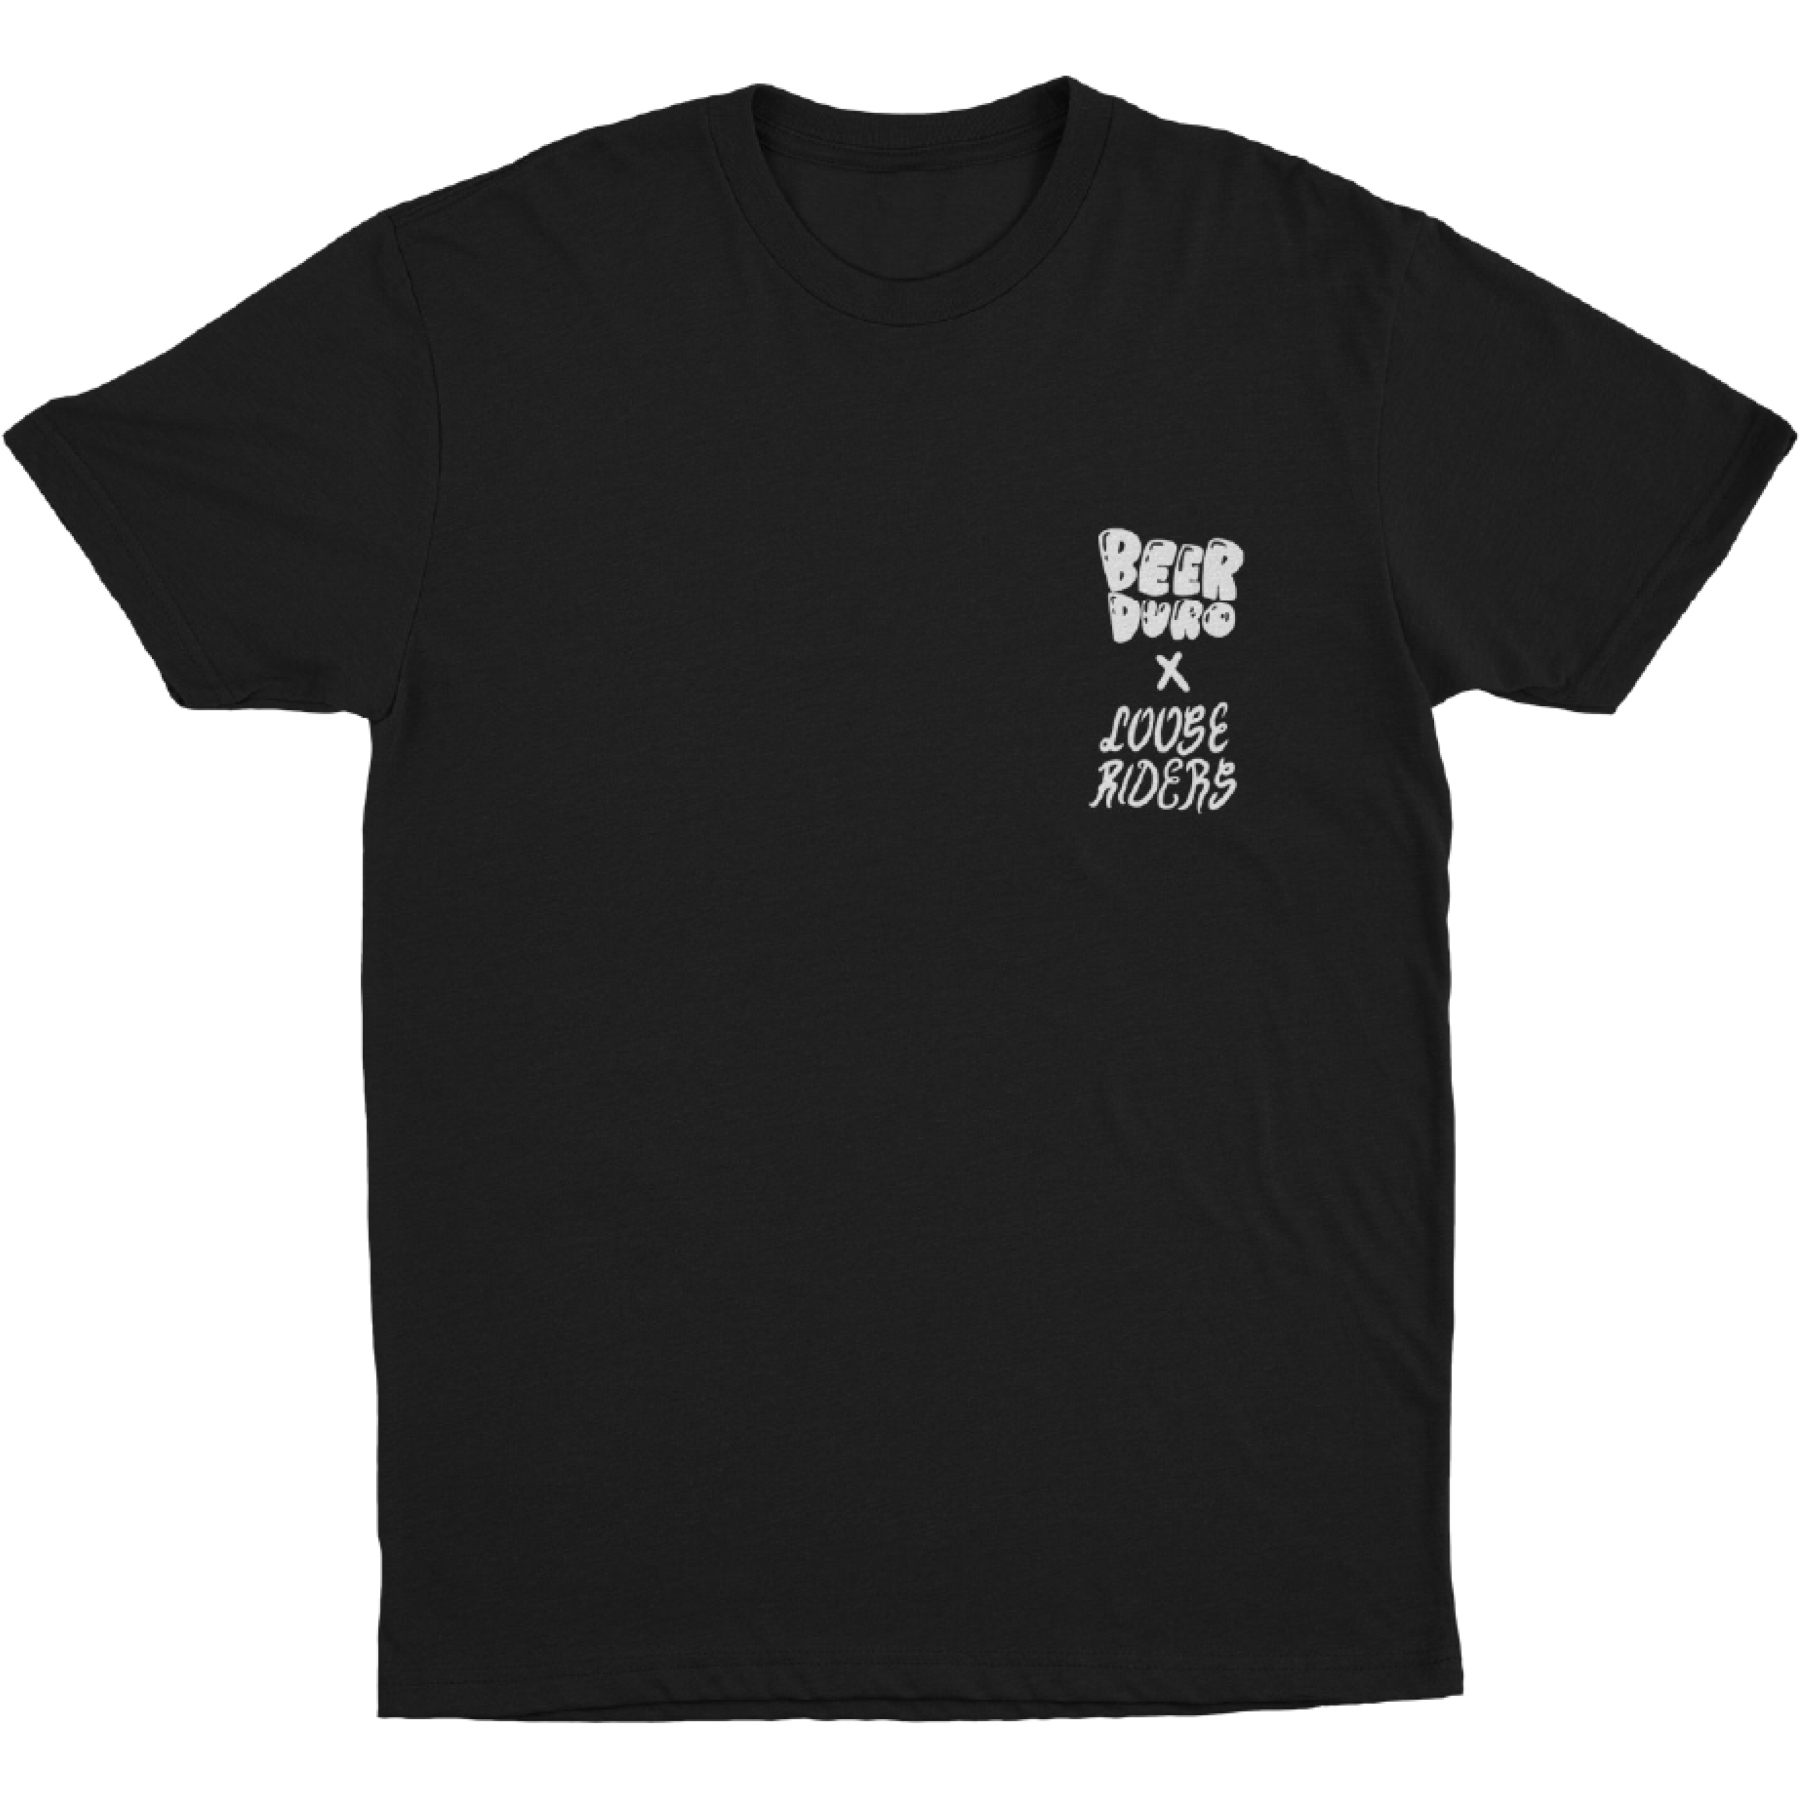 Produktbild von Loose Riders Beerduro Lifestyle T-Shirt - Wasted Crew 02